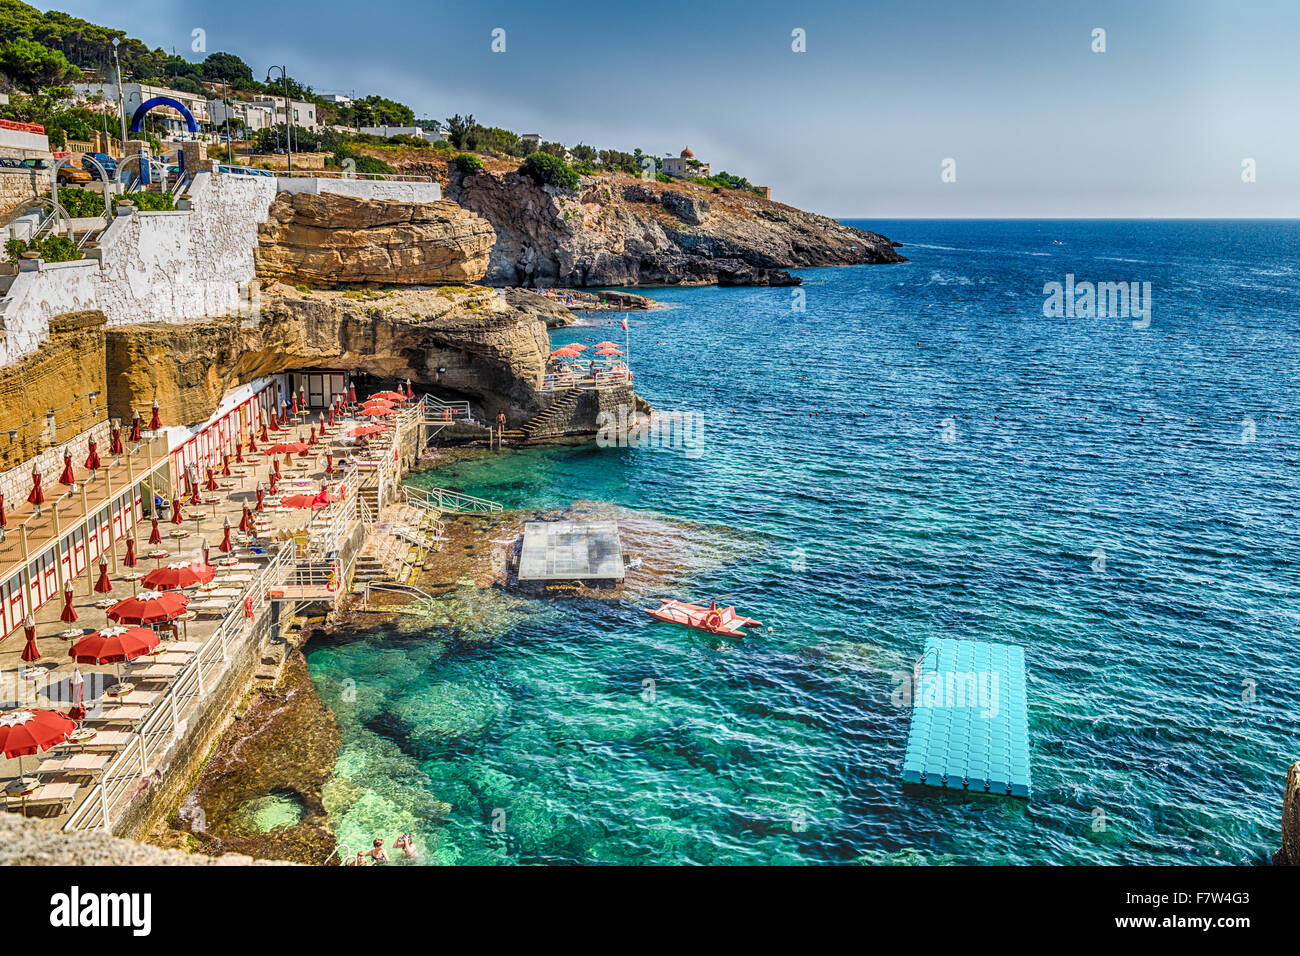 Stabilimenti balneari, rocce e architettura della costa salentina del Mare Ionio in Italia, a Santa Cesarea Terme, Lecce, Puglia Foto Stock